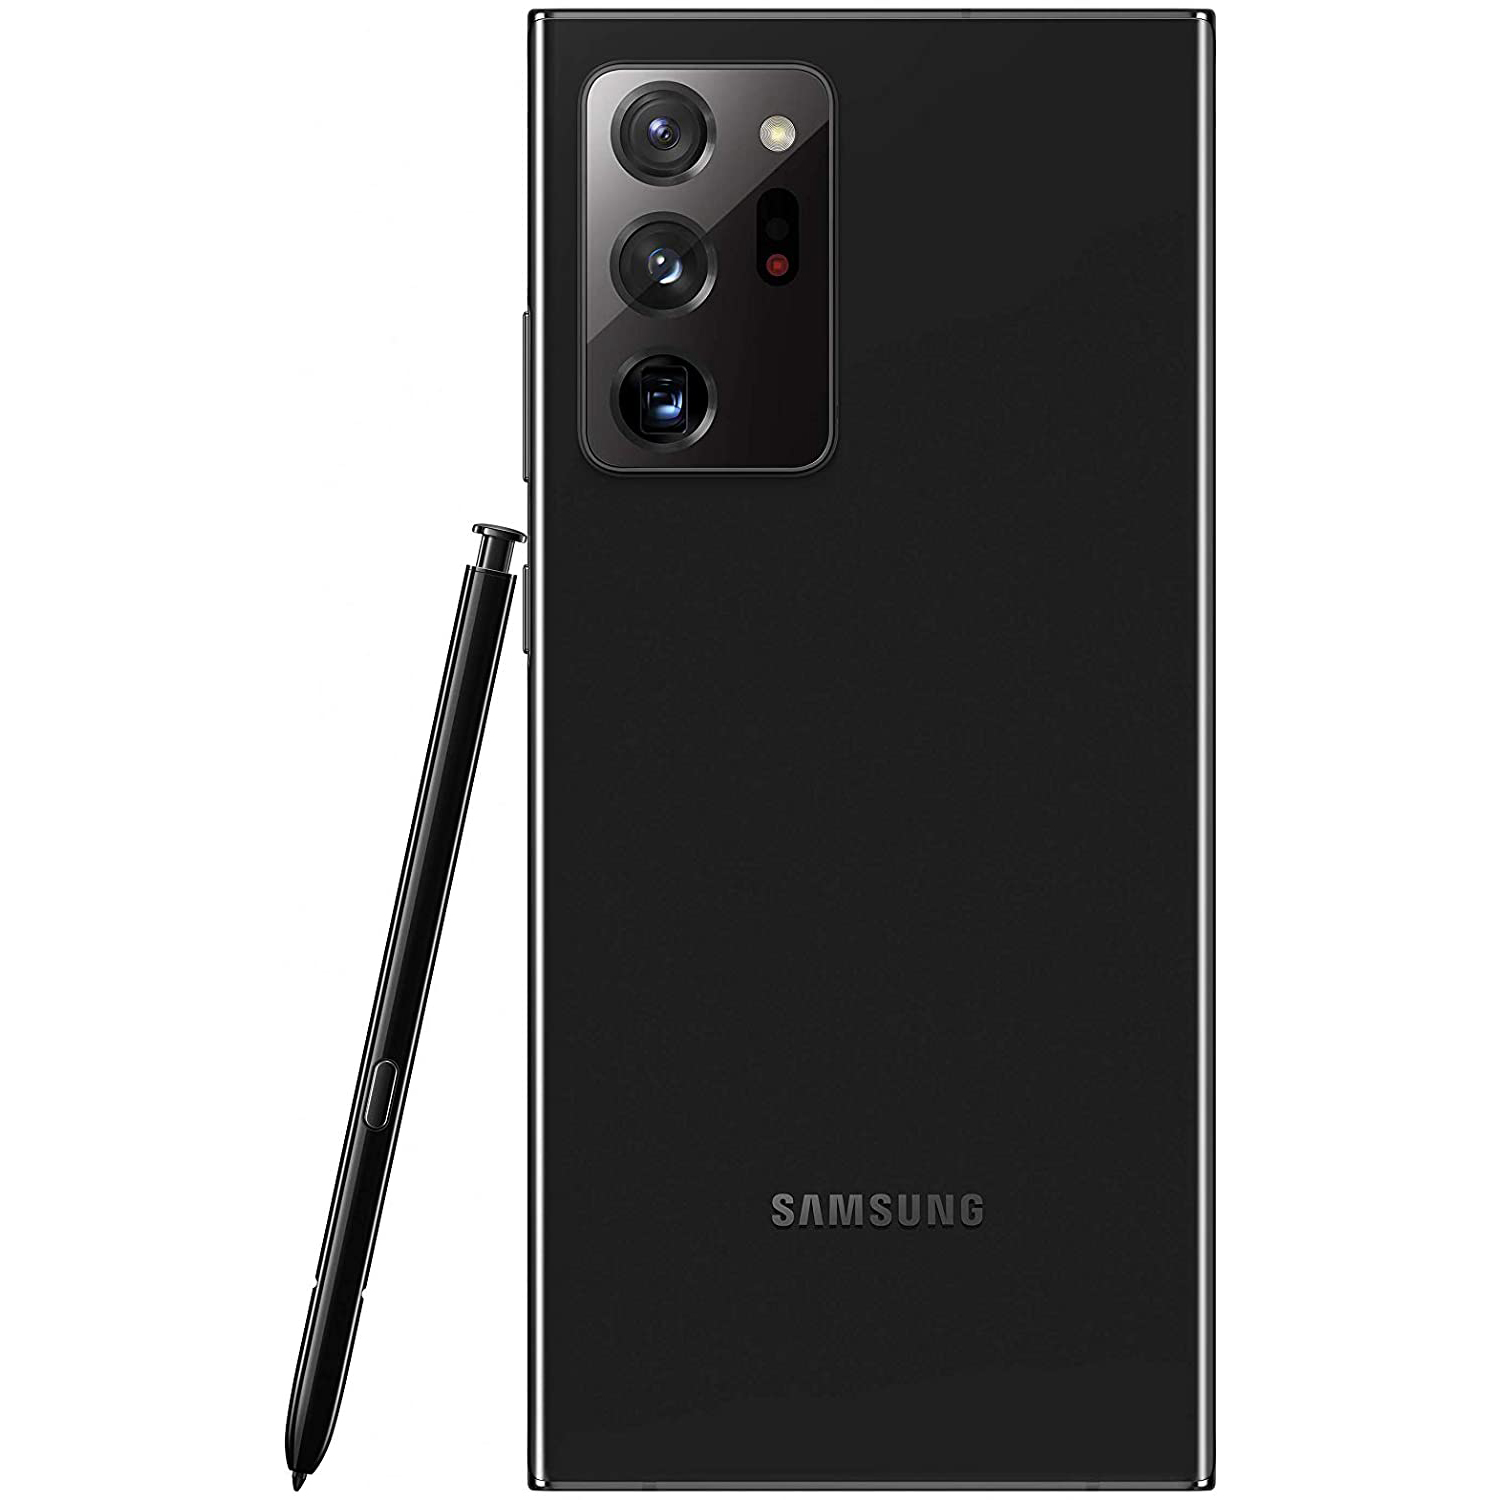 گوشی موبایل سامسونگ مدل Galaxy Note20 Ultra 5G SM-N986 دو سیم کارت ظرفیت 256 گیگابایت main 1 2